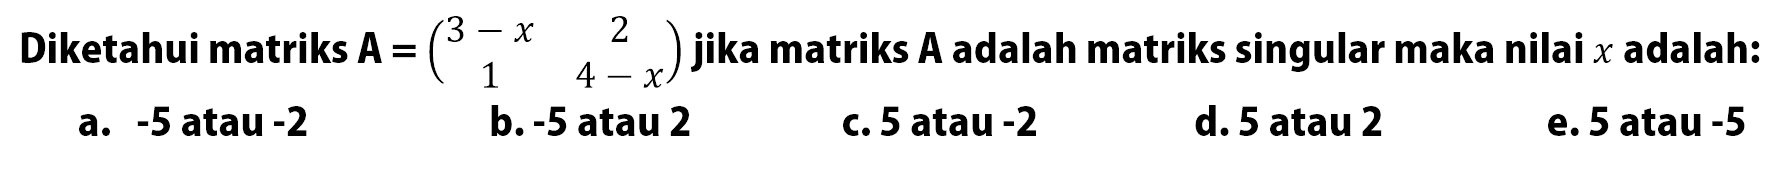 Diketahui matriks A=(3-x 2 1 4-x) jika matriks A adalah matriks singular maka nilai x adalah: